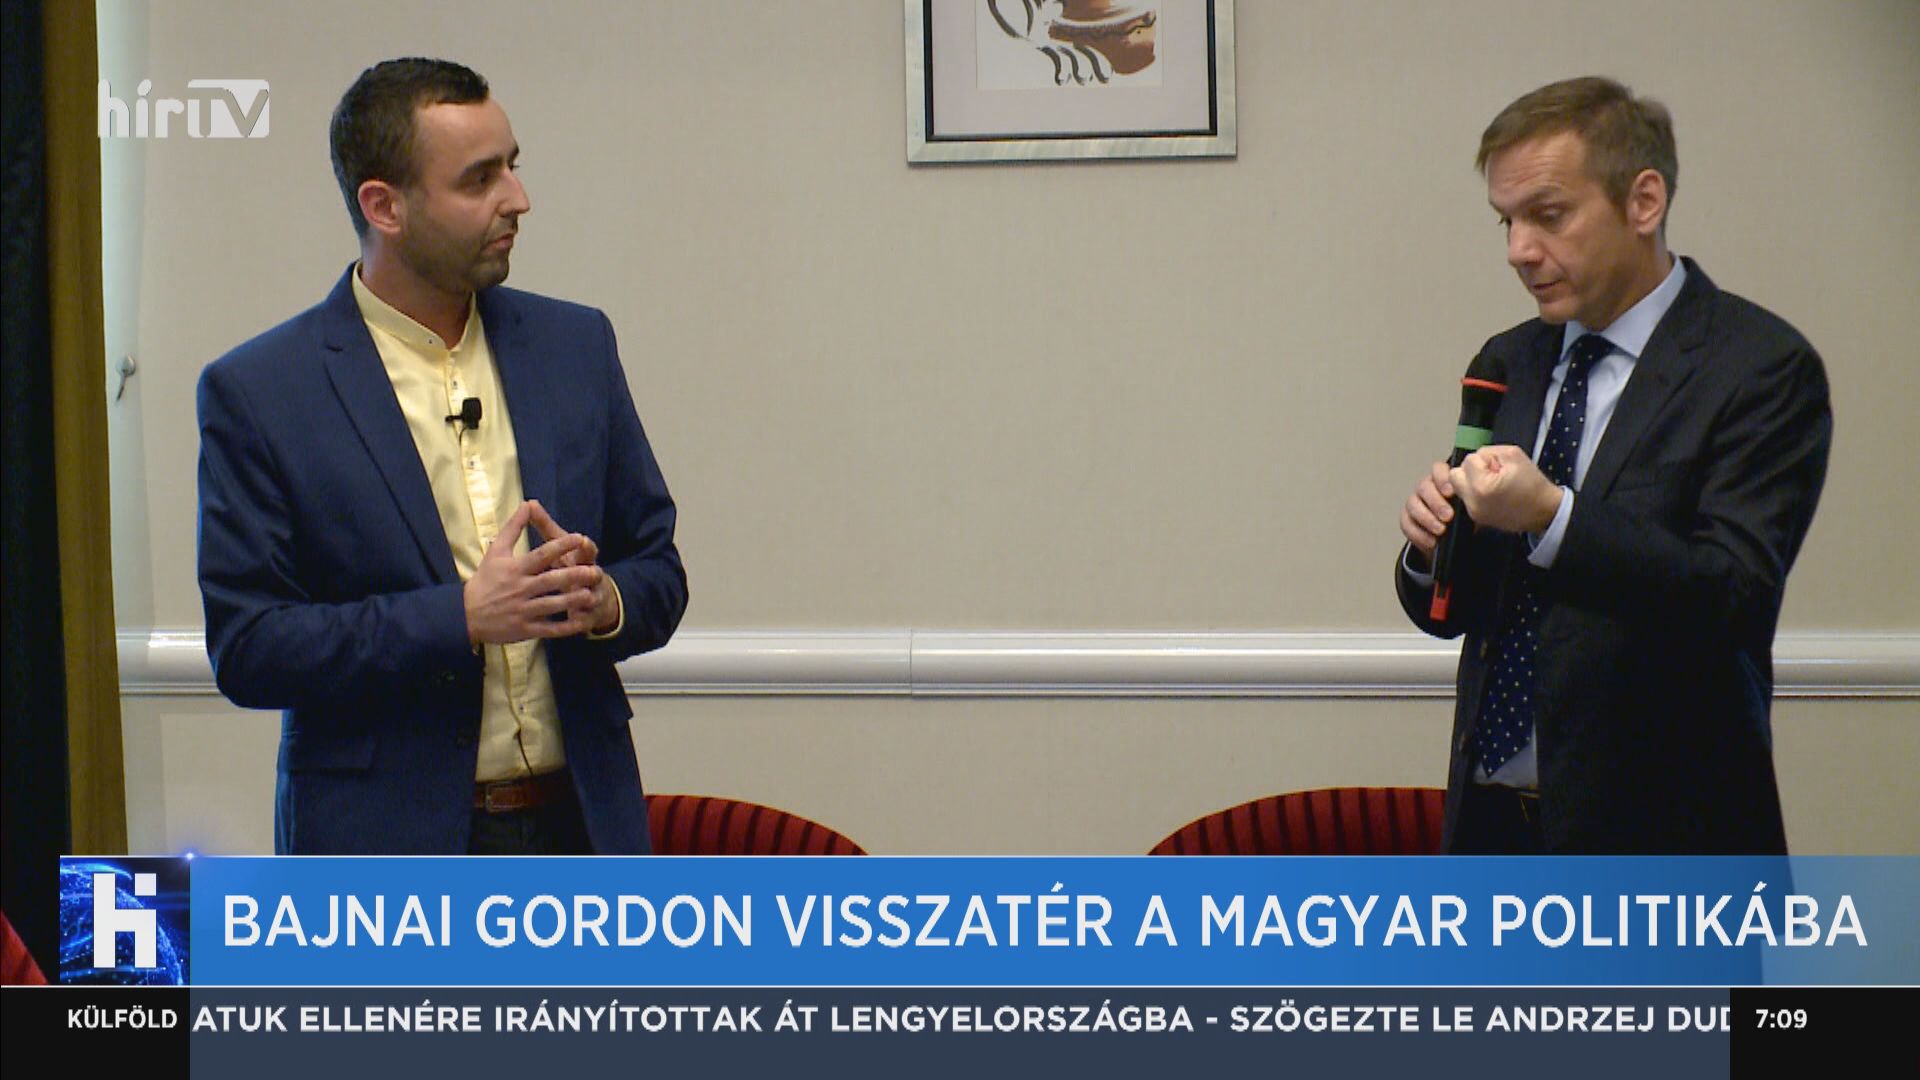 Bajnai Gordon visszatér a magyar politikába